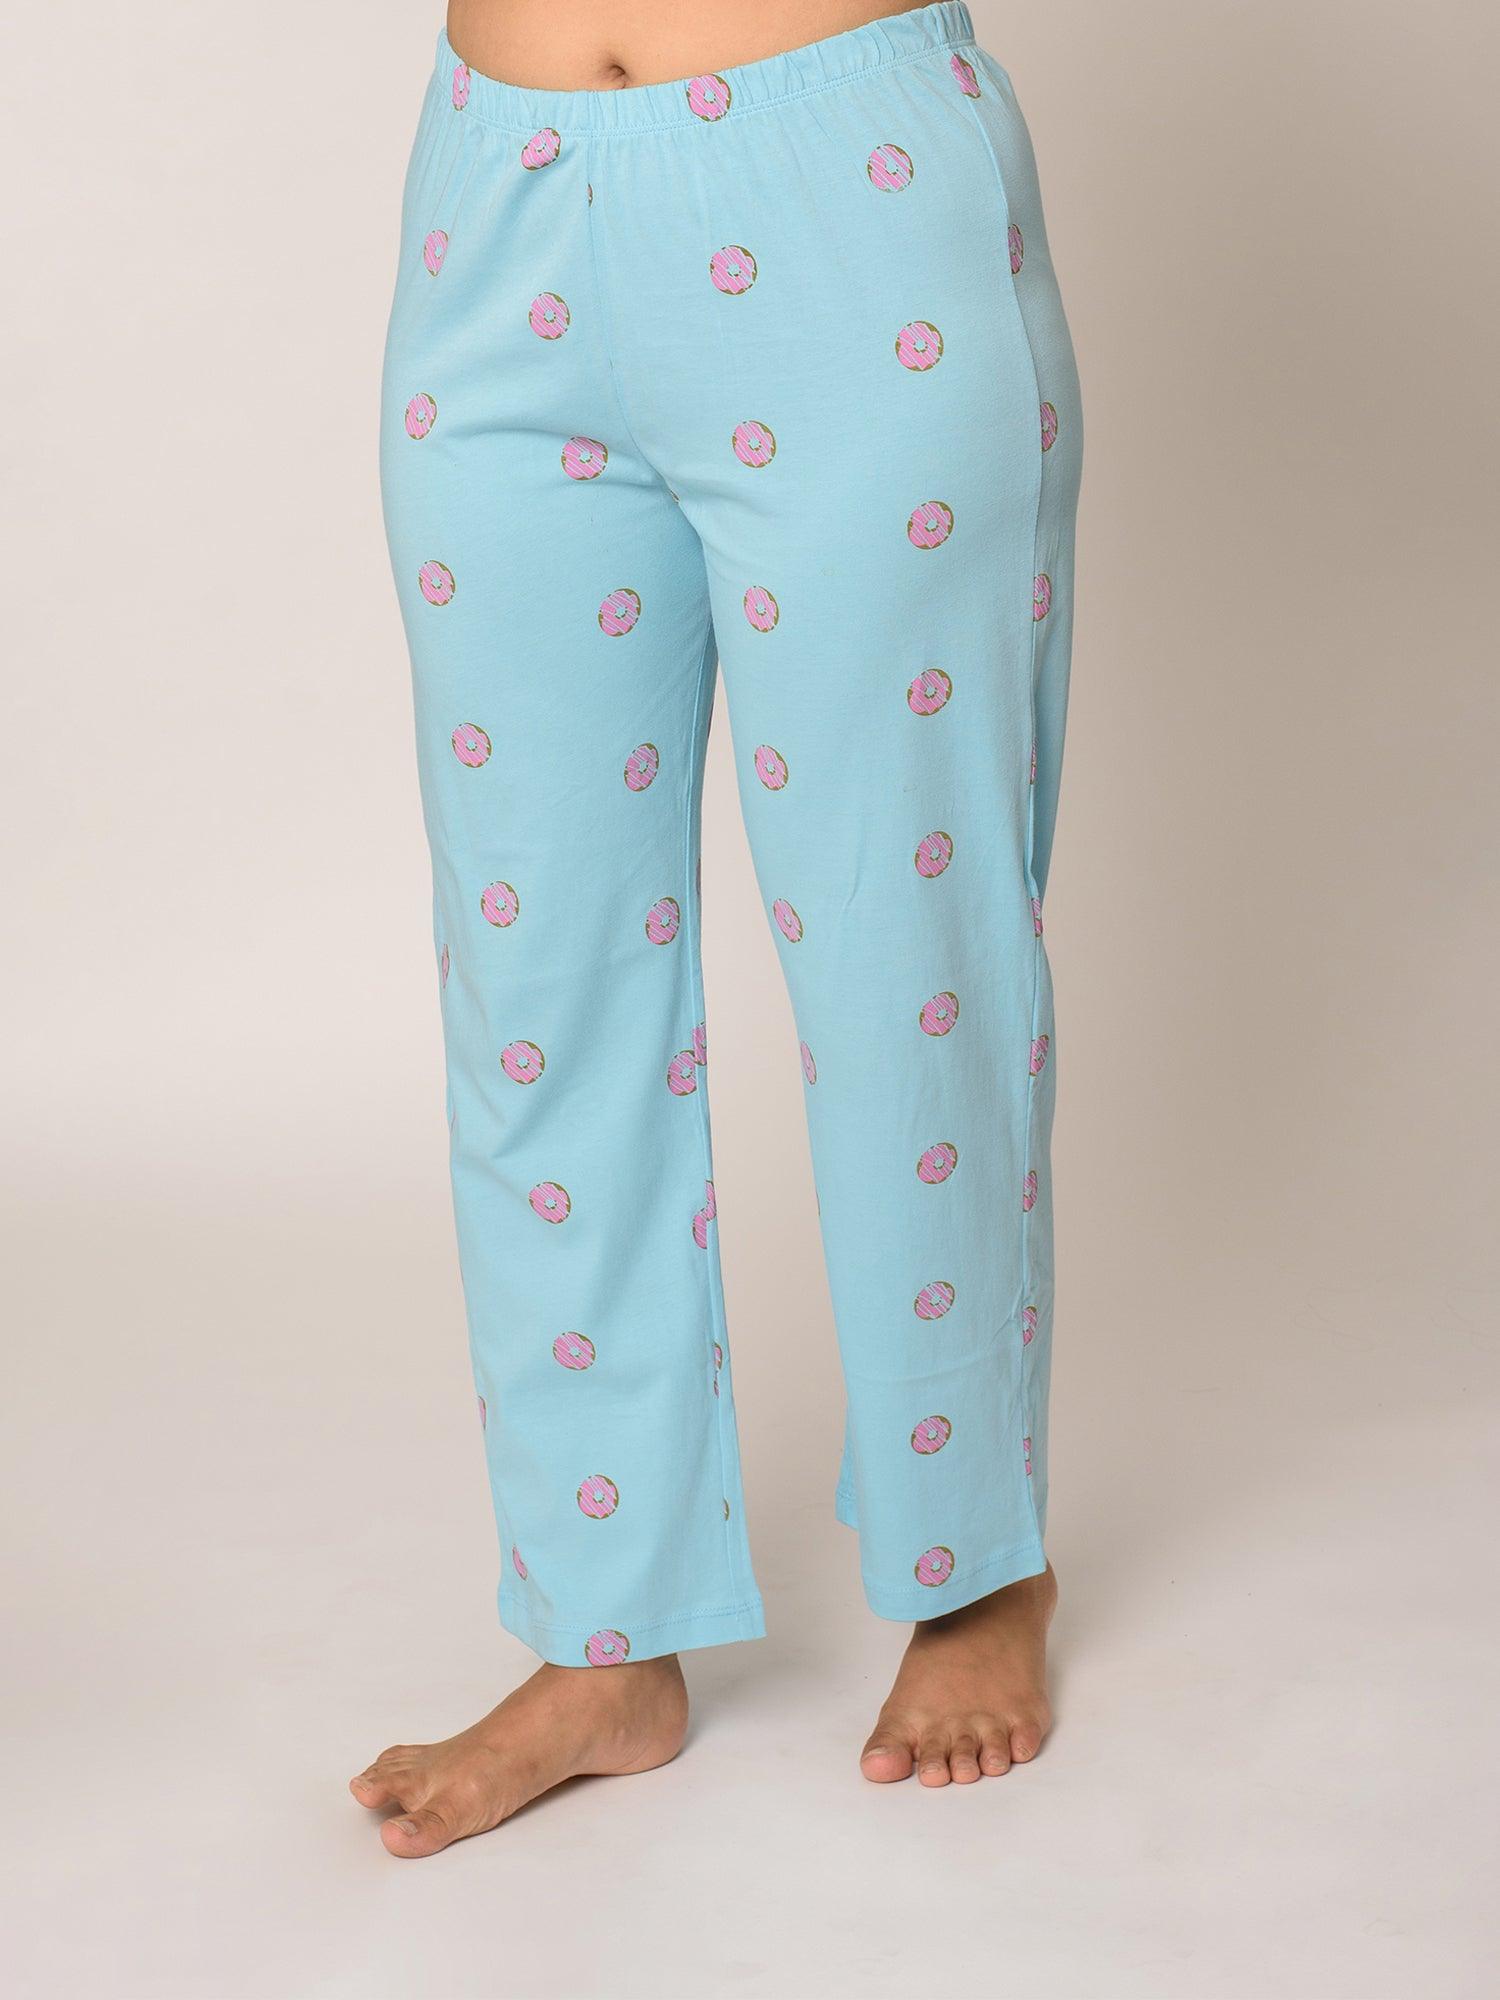 Donut Print Cotton Pyjamas - soxytoes